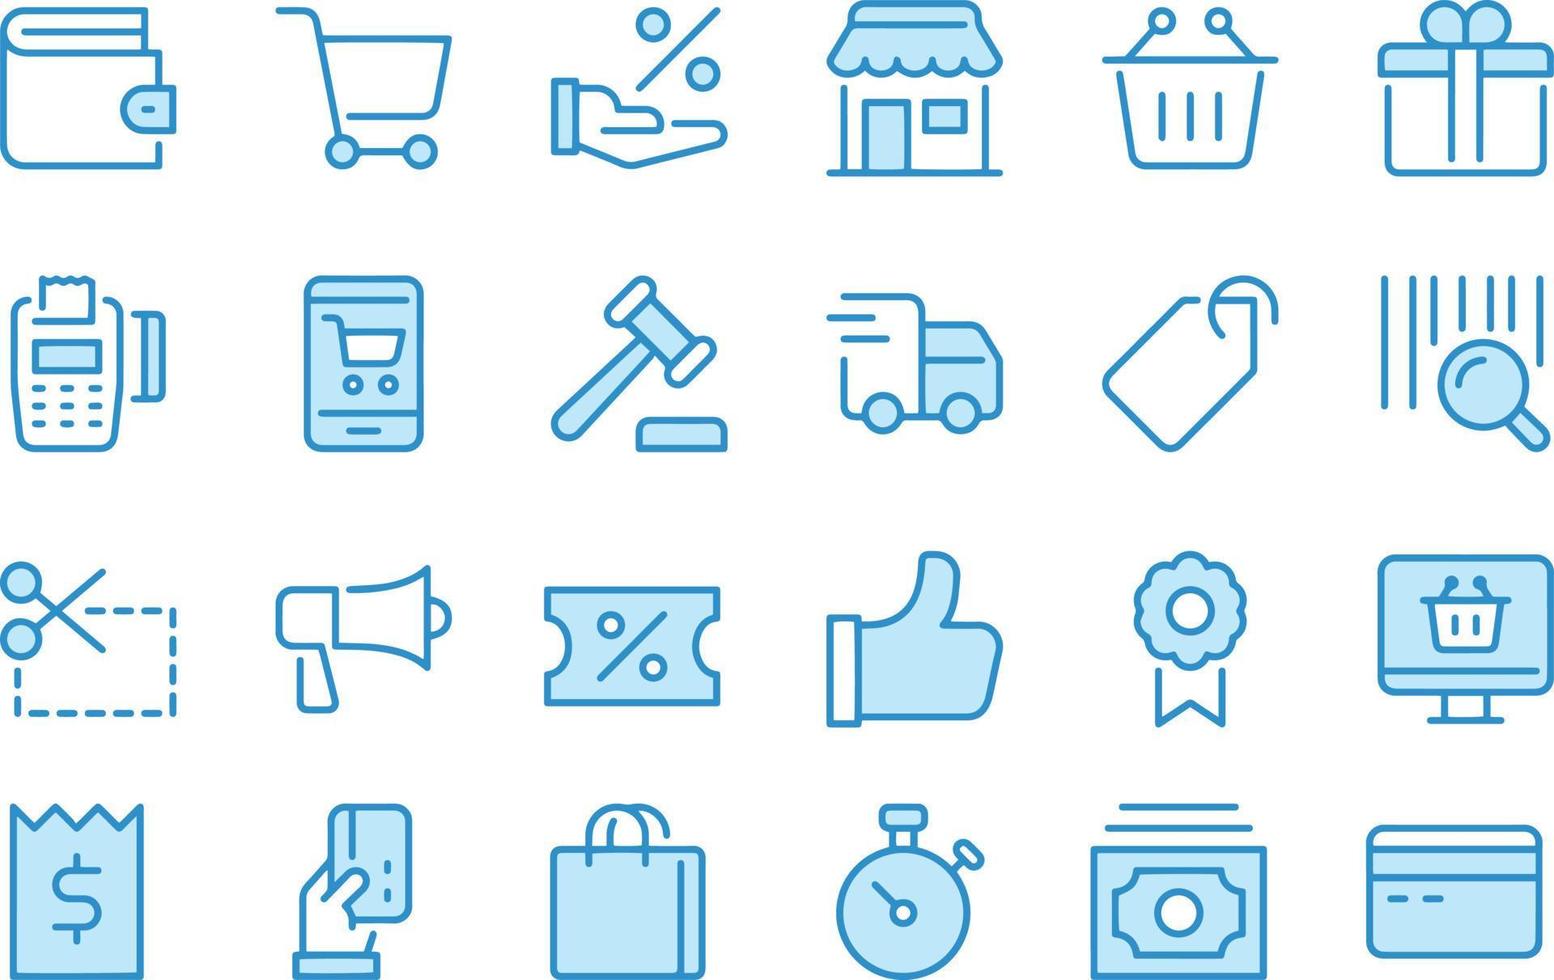 Shopping icons vector design